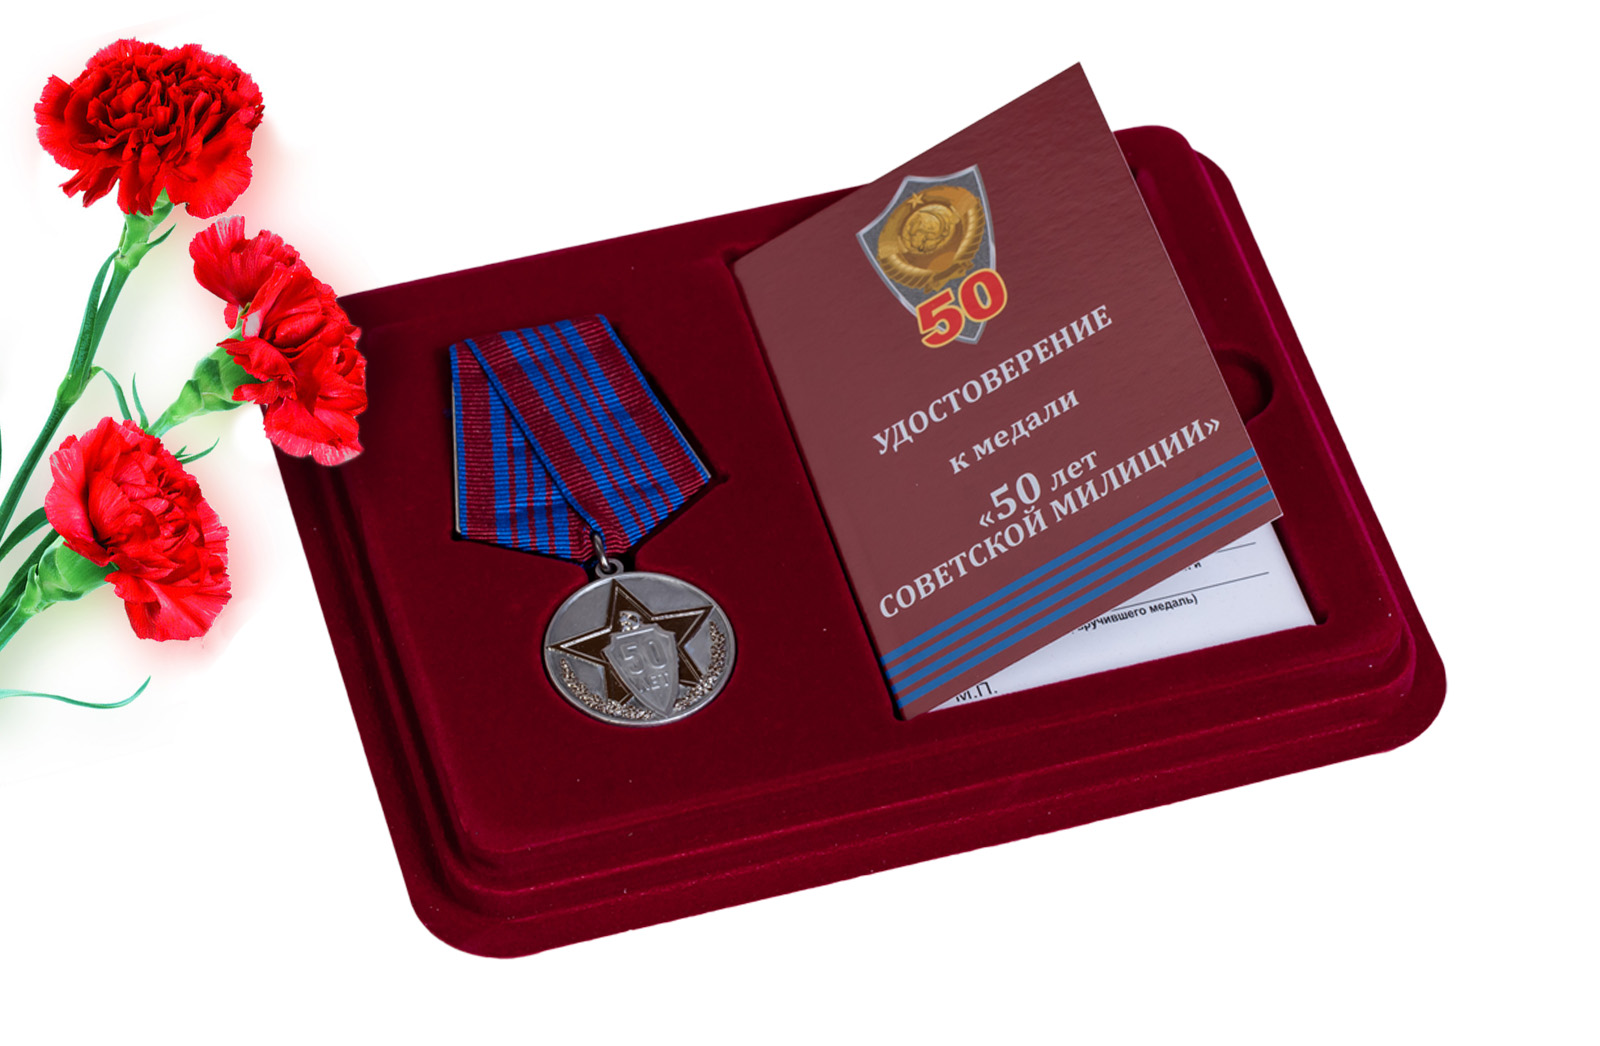 Купить памятную медаль 50 лет советской милиции в подарок